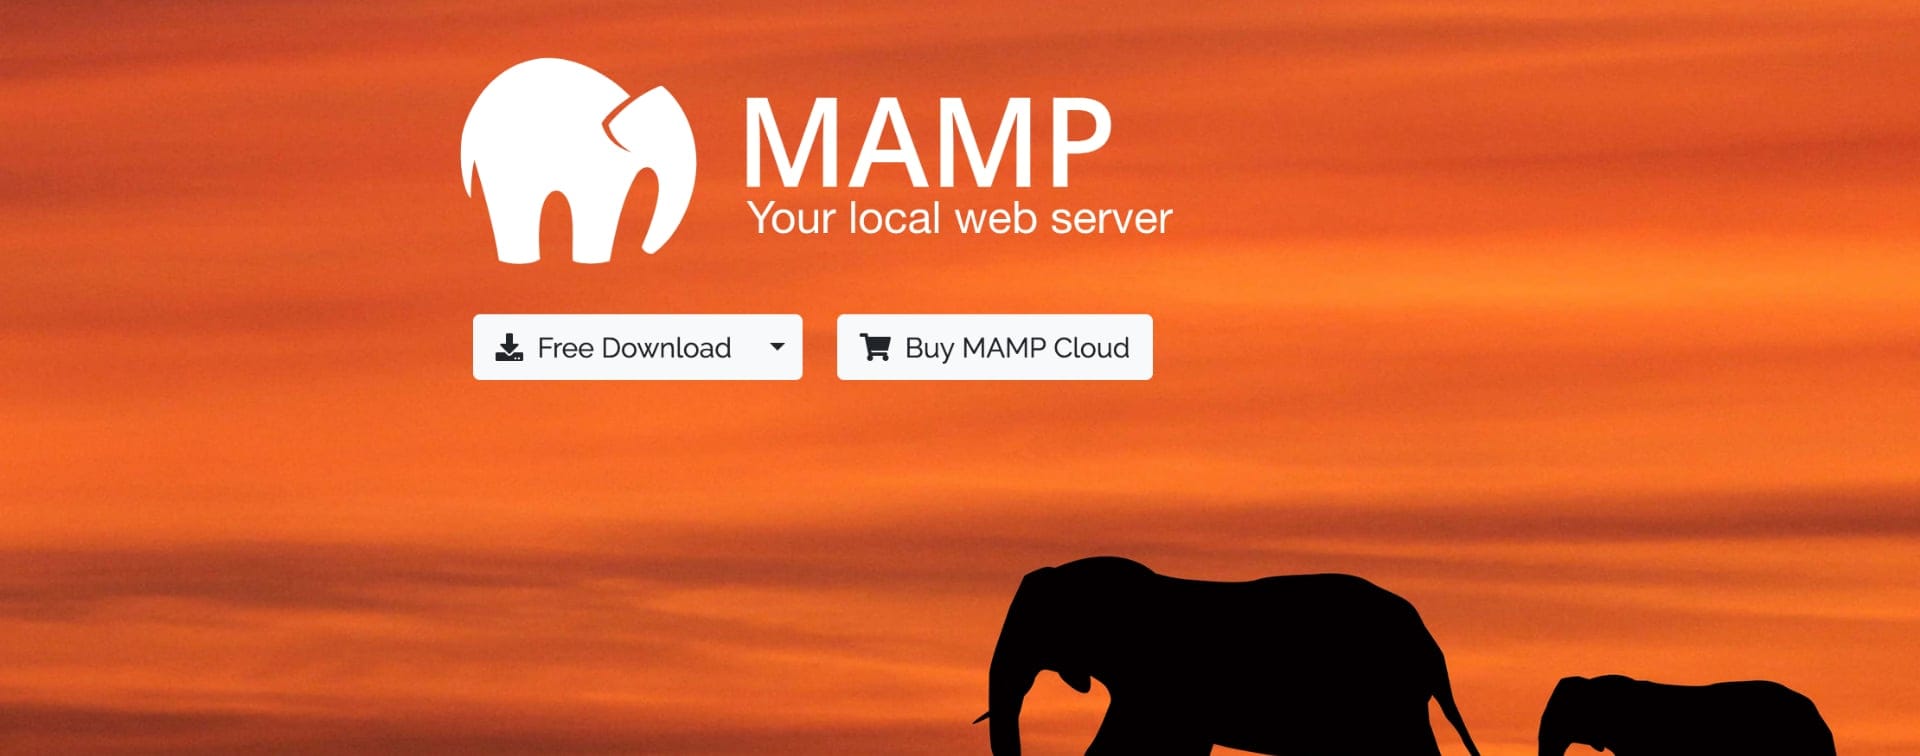 MAMP macOS web server Hugo